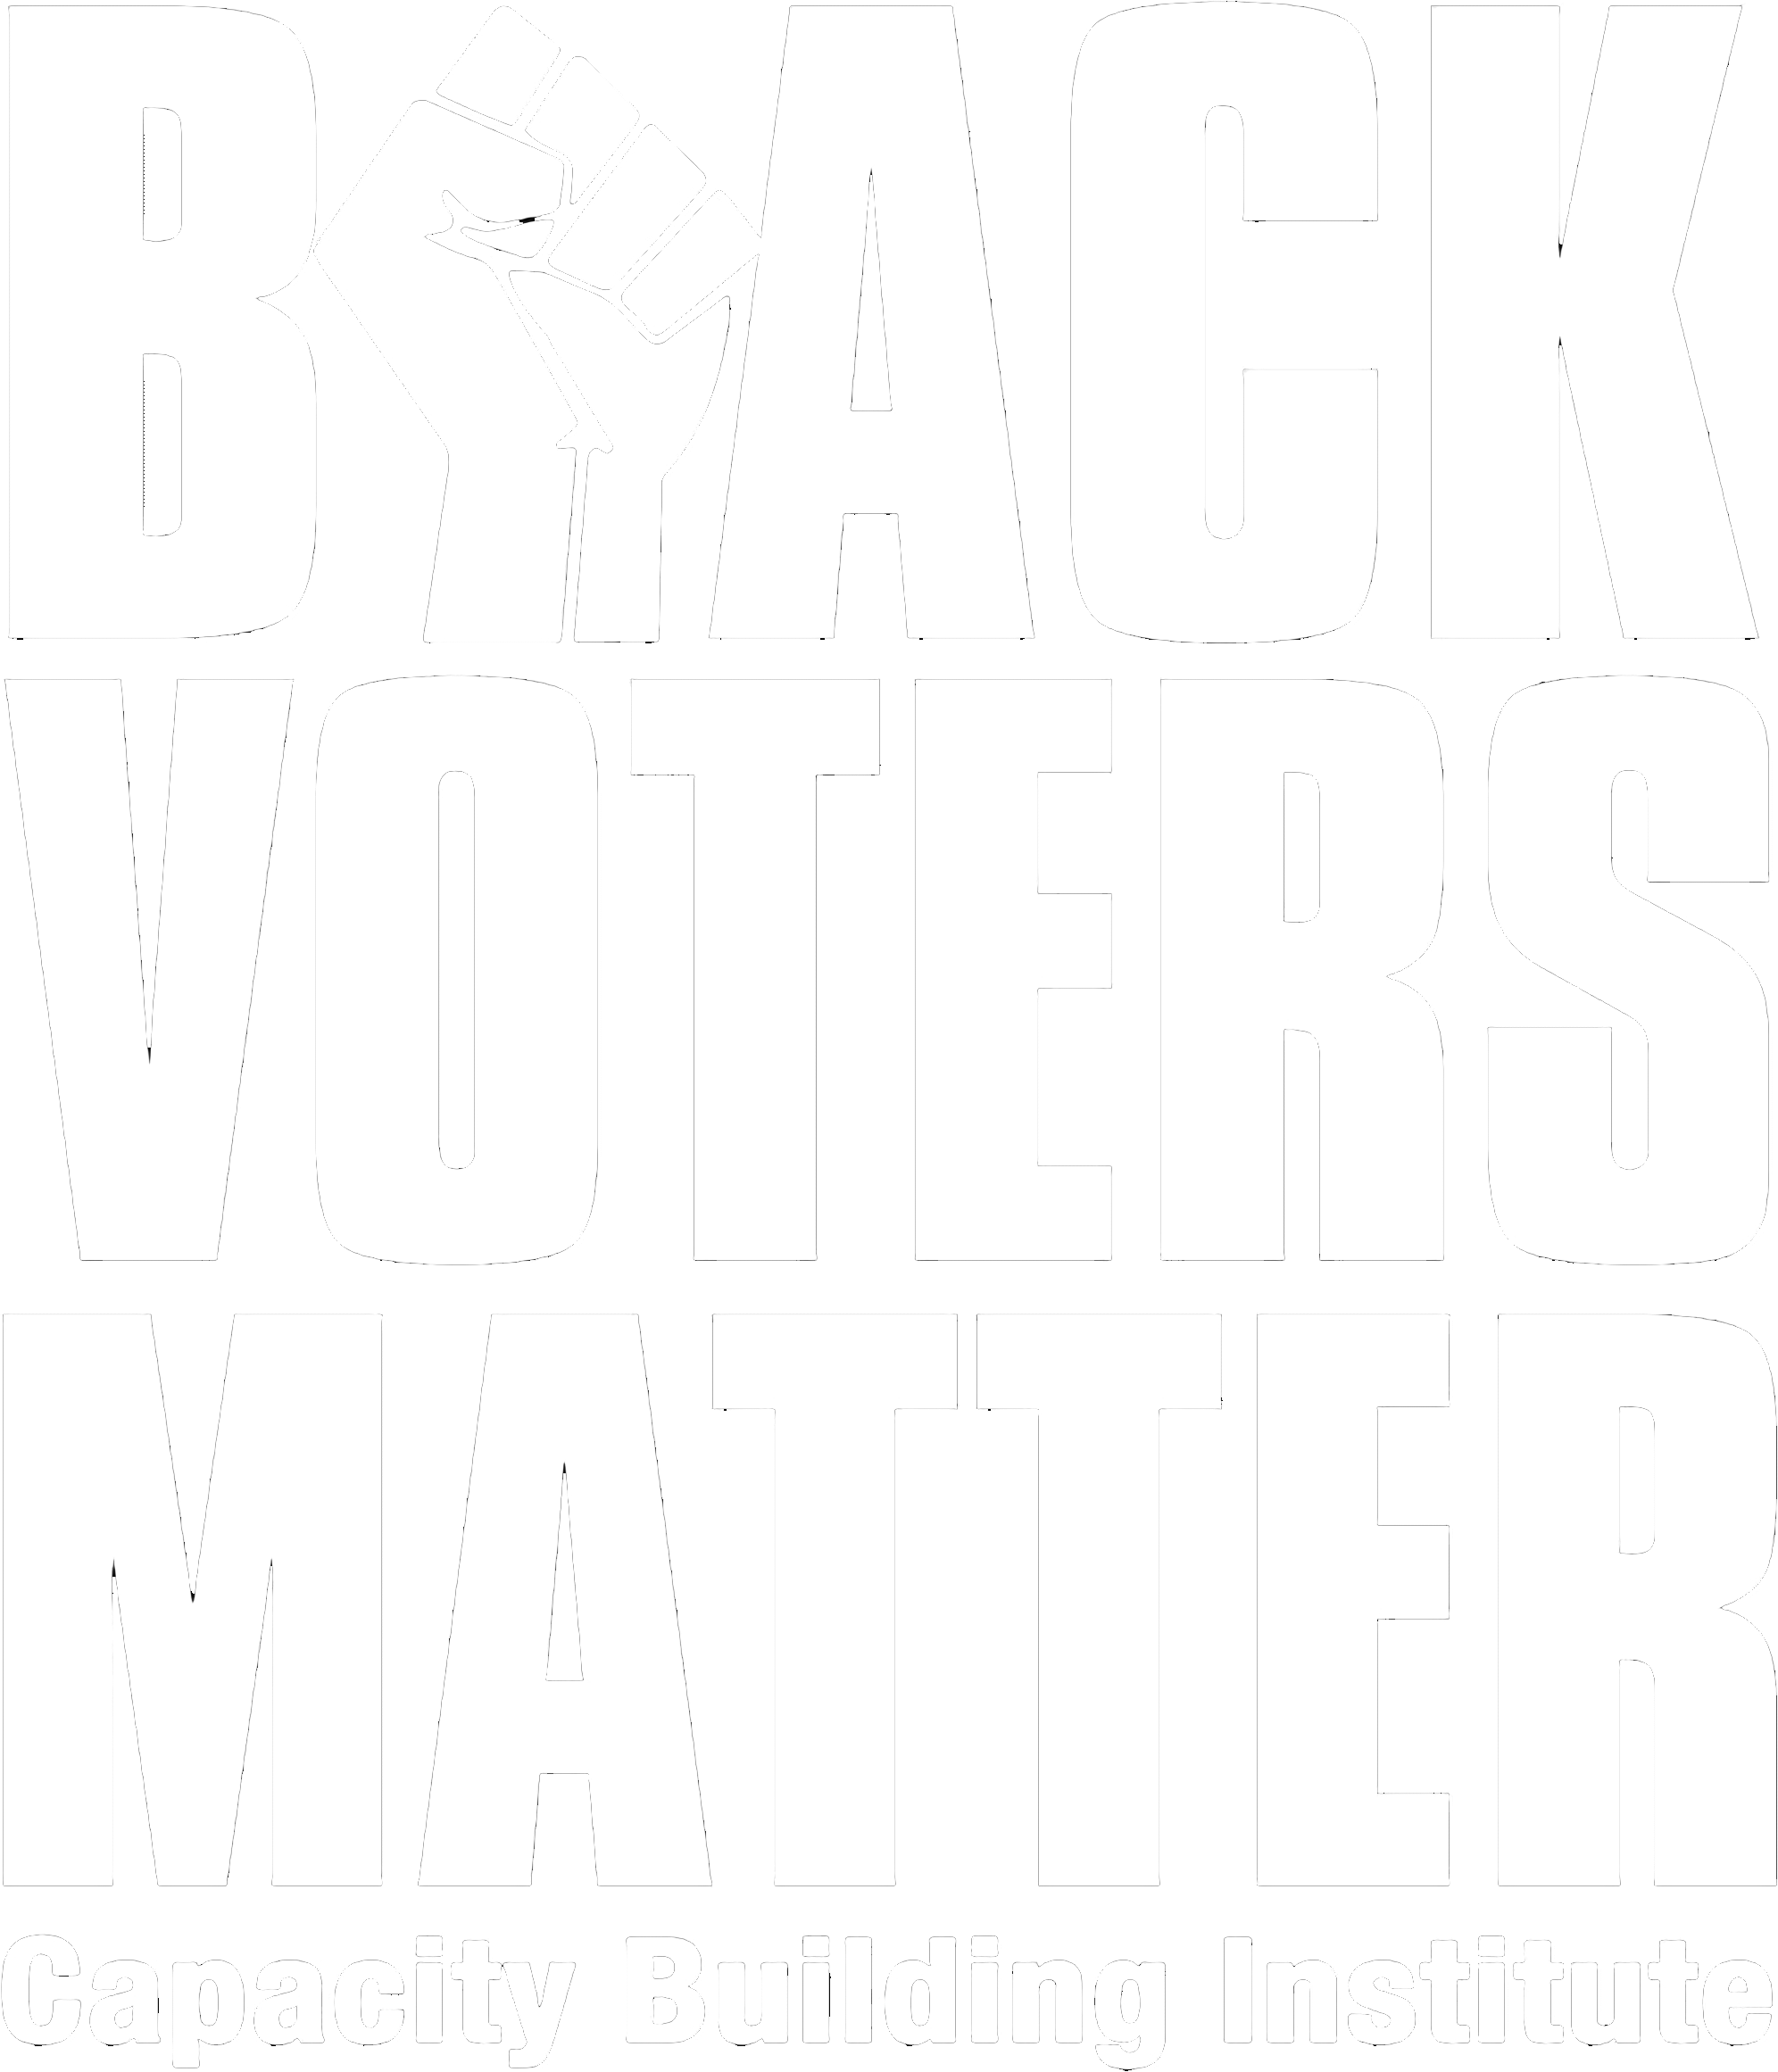 Black Voters Matter - Capacity Building Institute